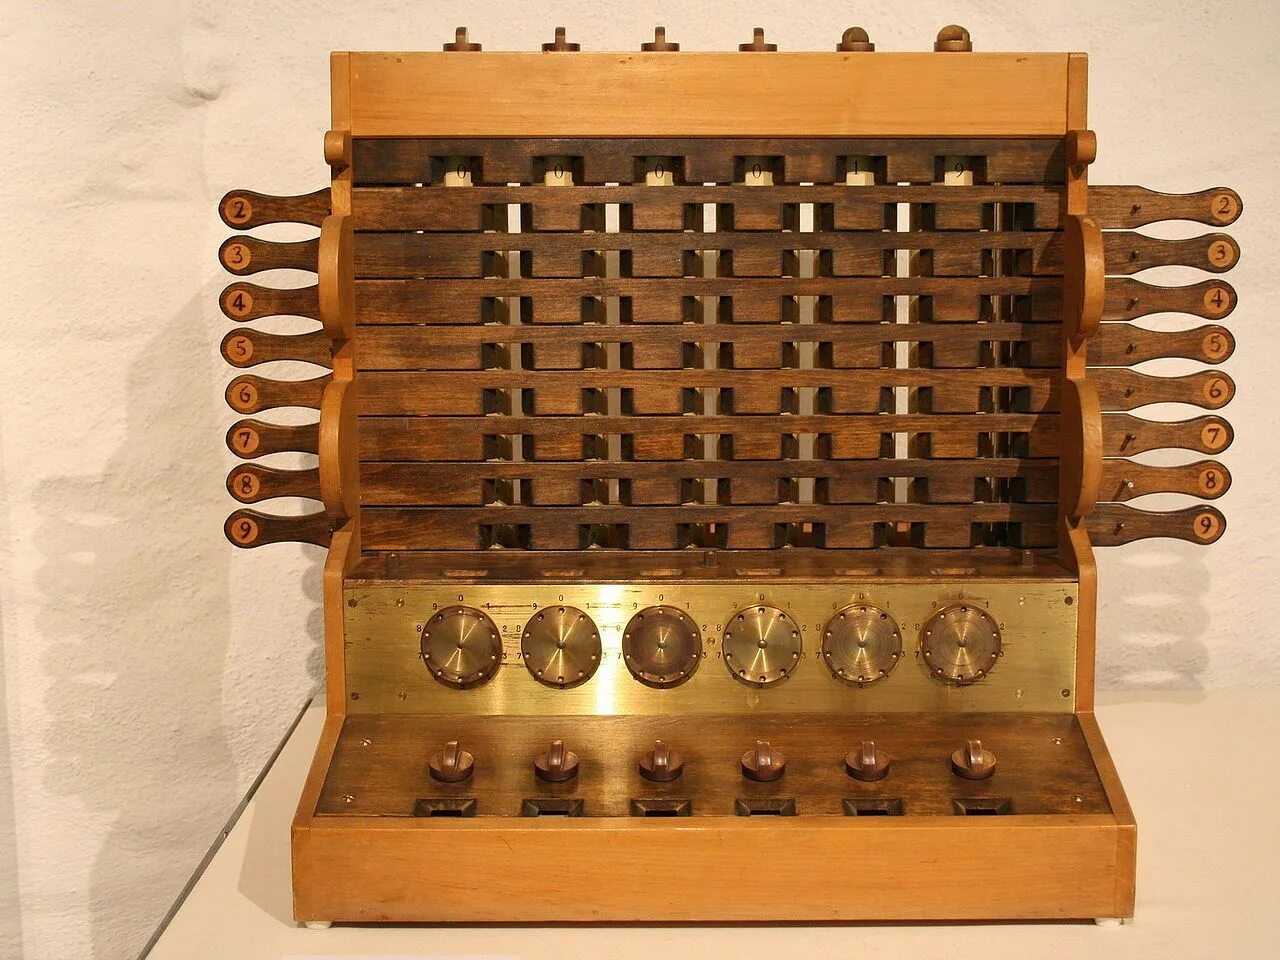 Счетная машина Вильгельма Шиккарда. Считающие часы Вильгельма Шиккарда. Первый механический калькулятор Вильгельма Шиккарда. Механическая счетная машина Шикарда 1623. First calculating